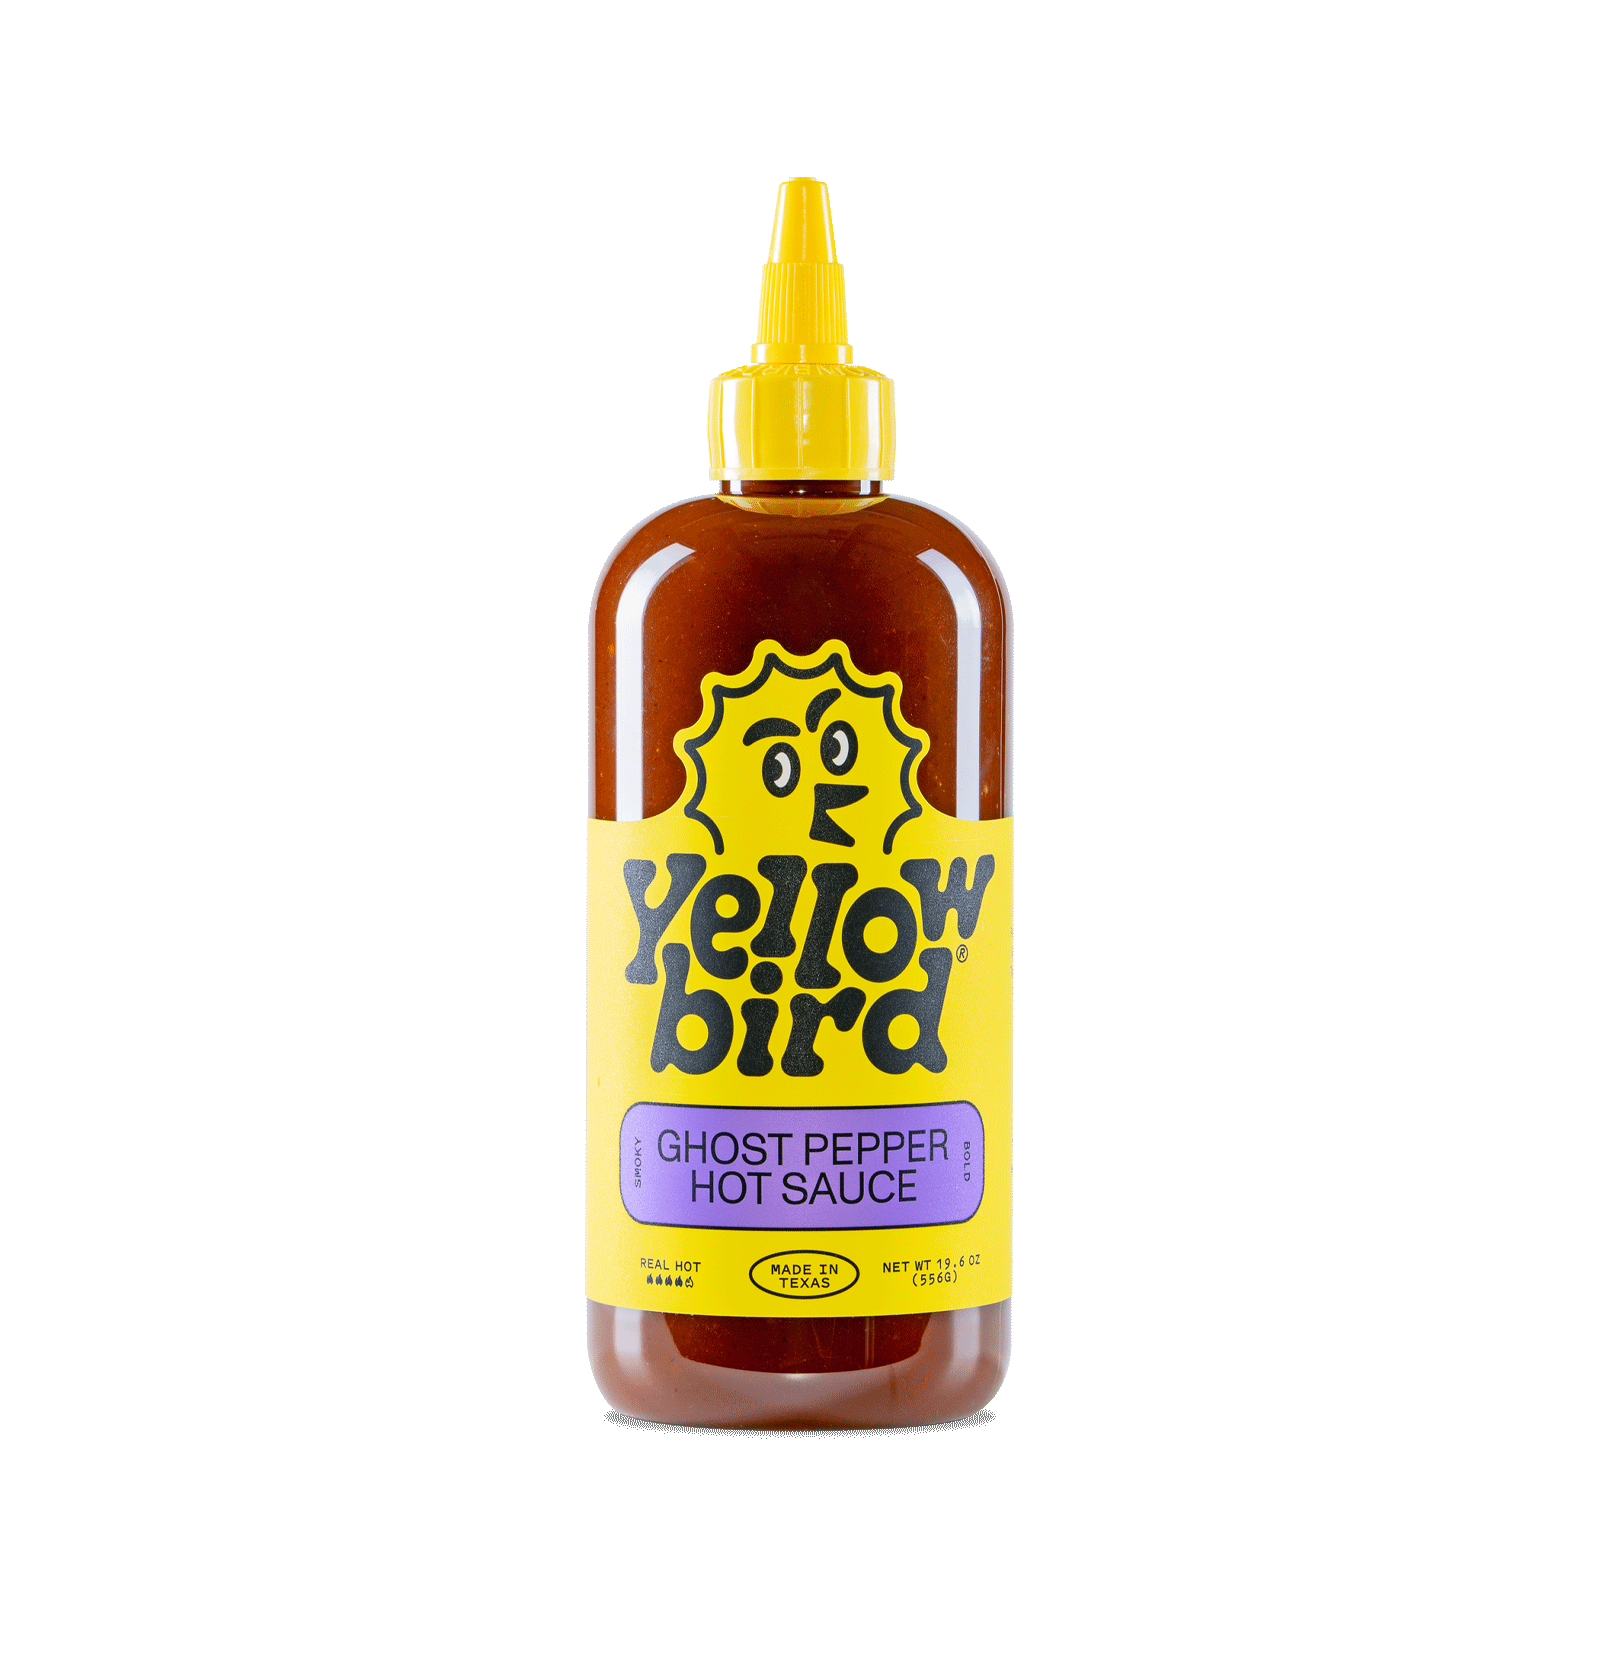 Yellowbird Classic Ghost Pepper Hot Sauce 19.6 oz.